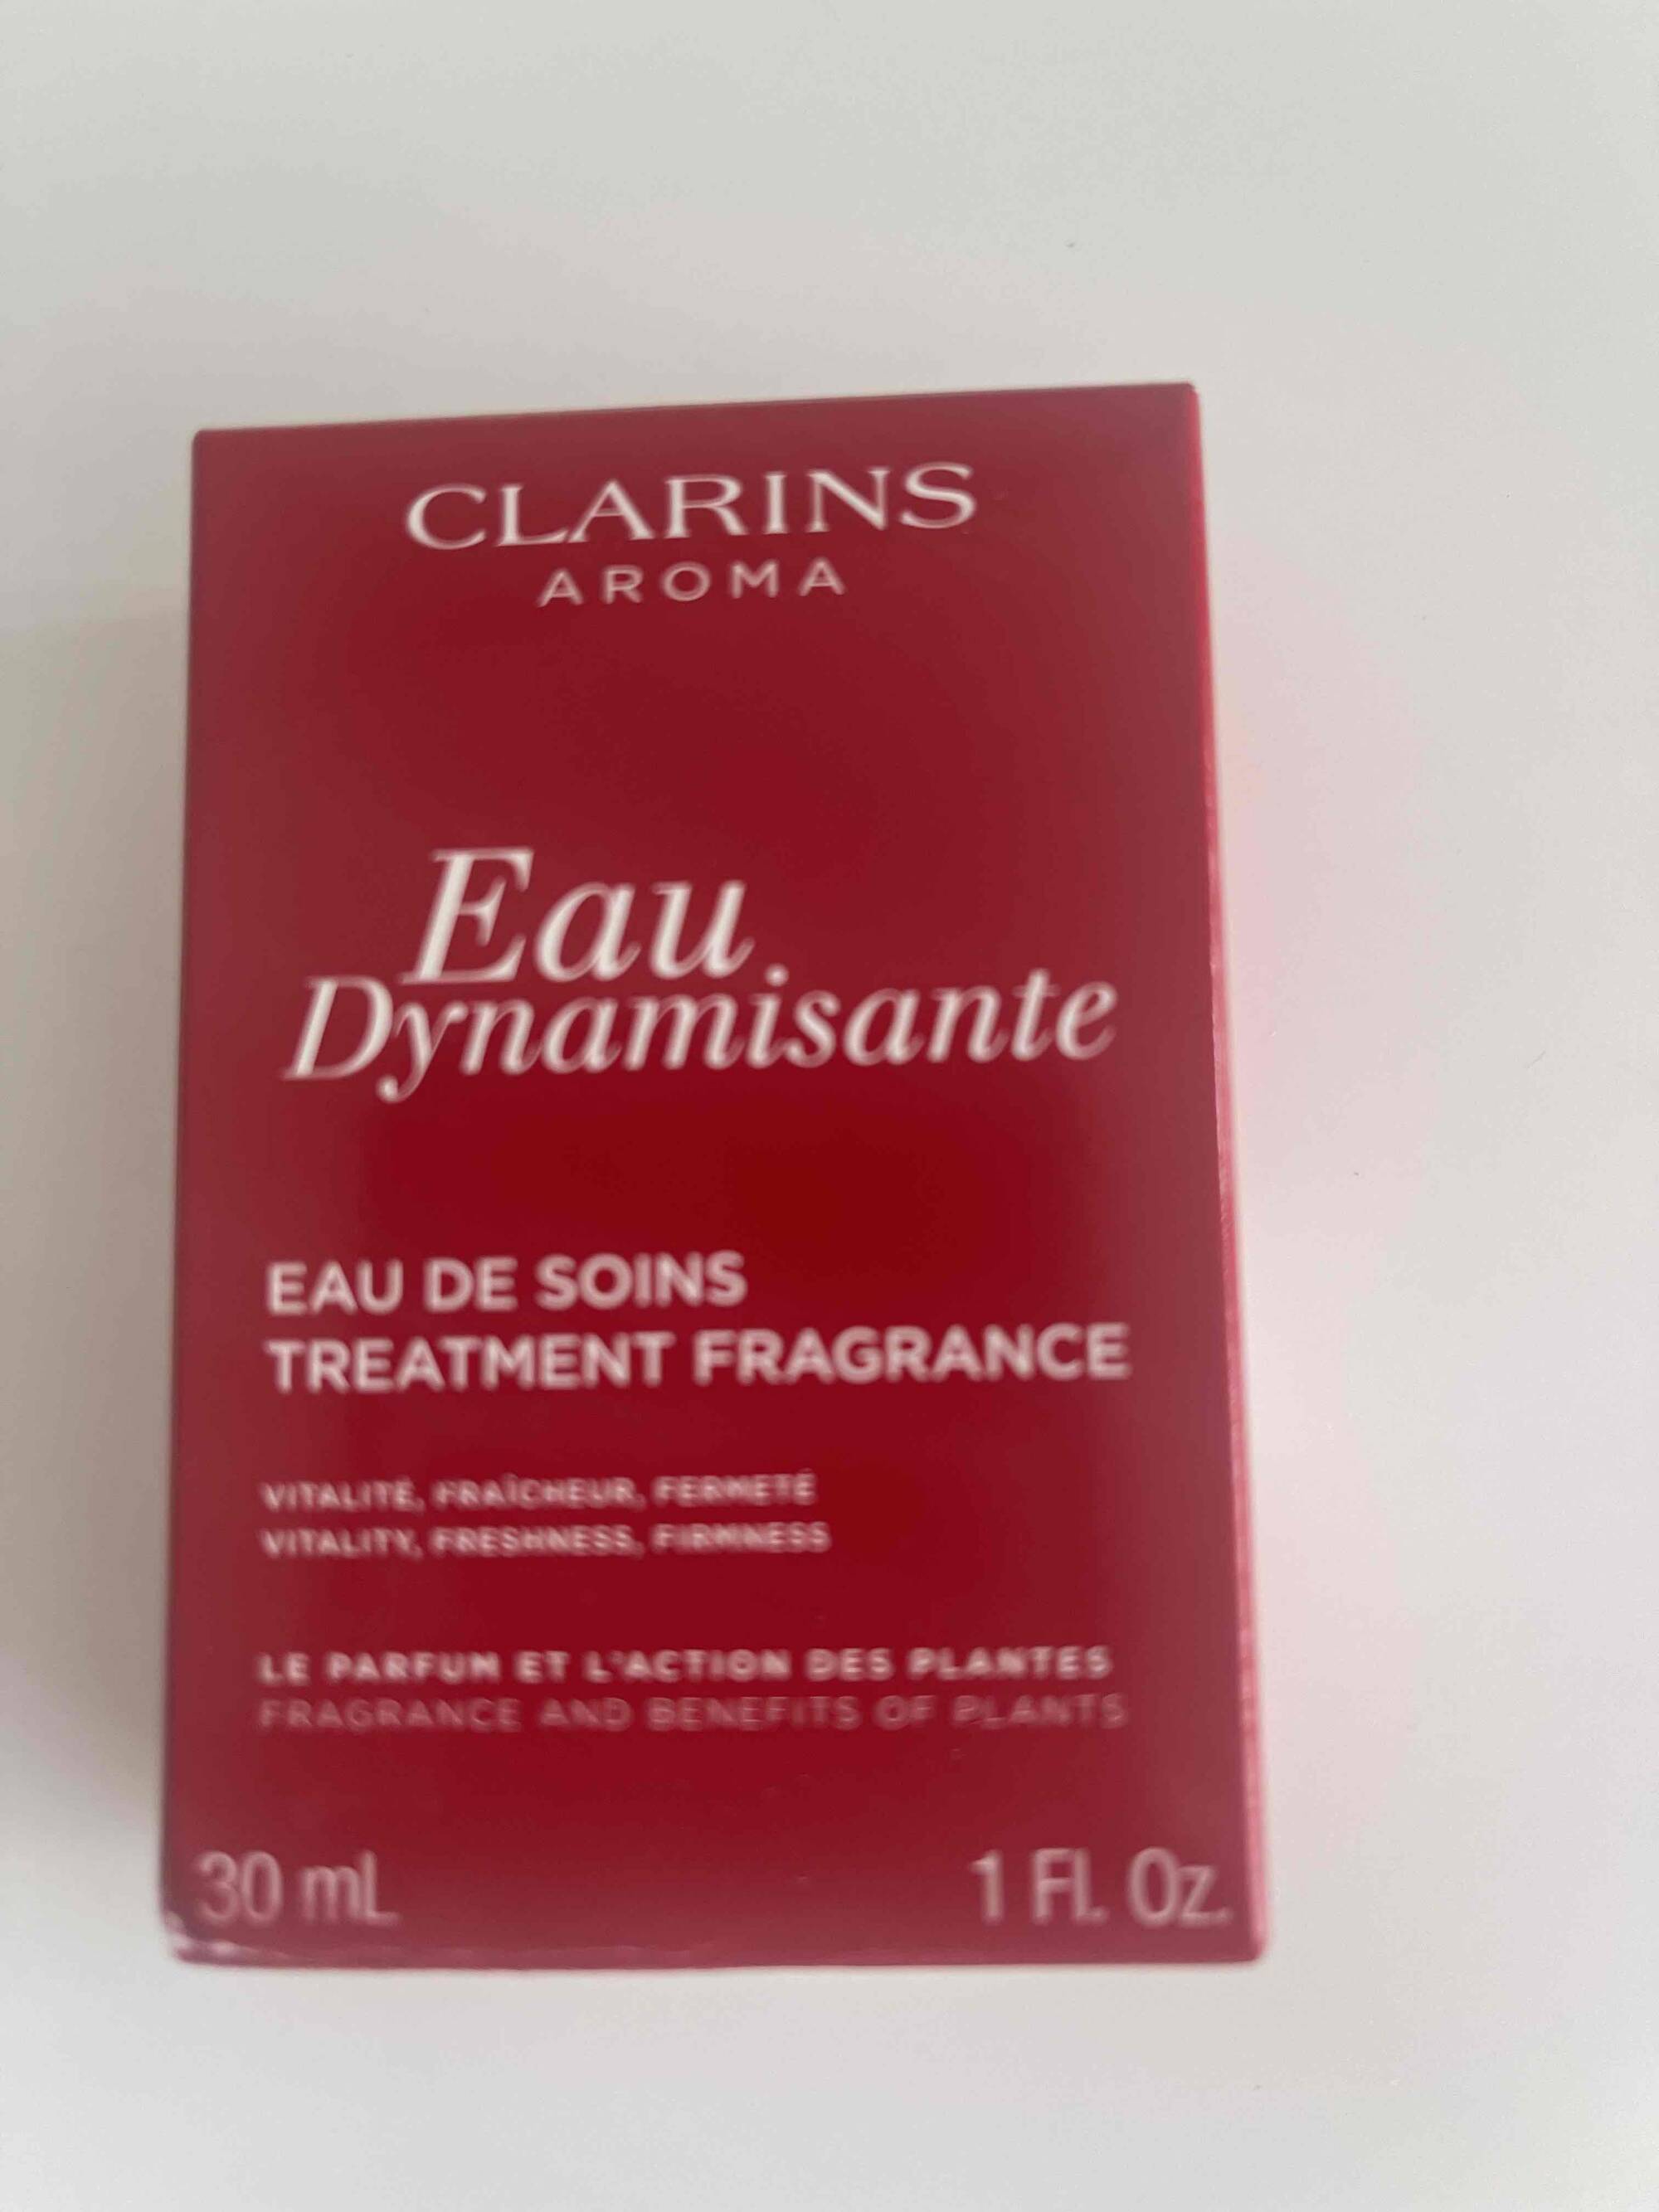 CLARINS -  Eau dynamisante - Eau de soins treatment fragrance